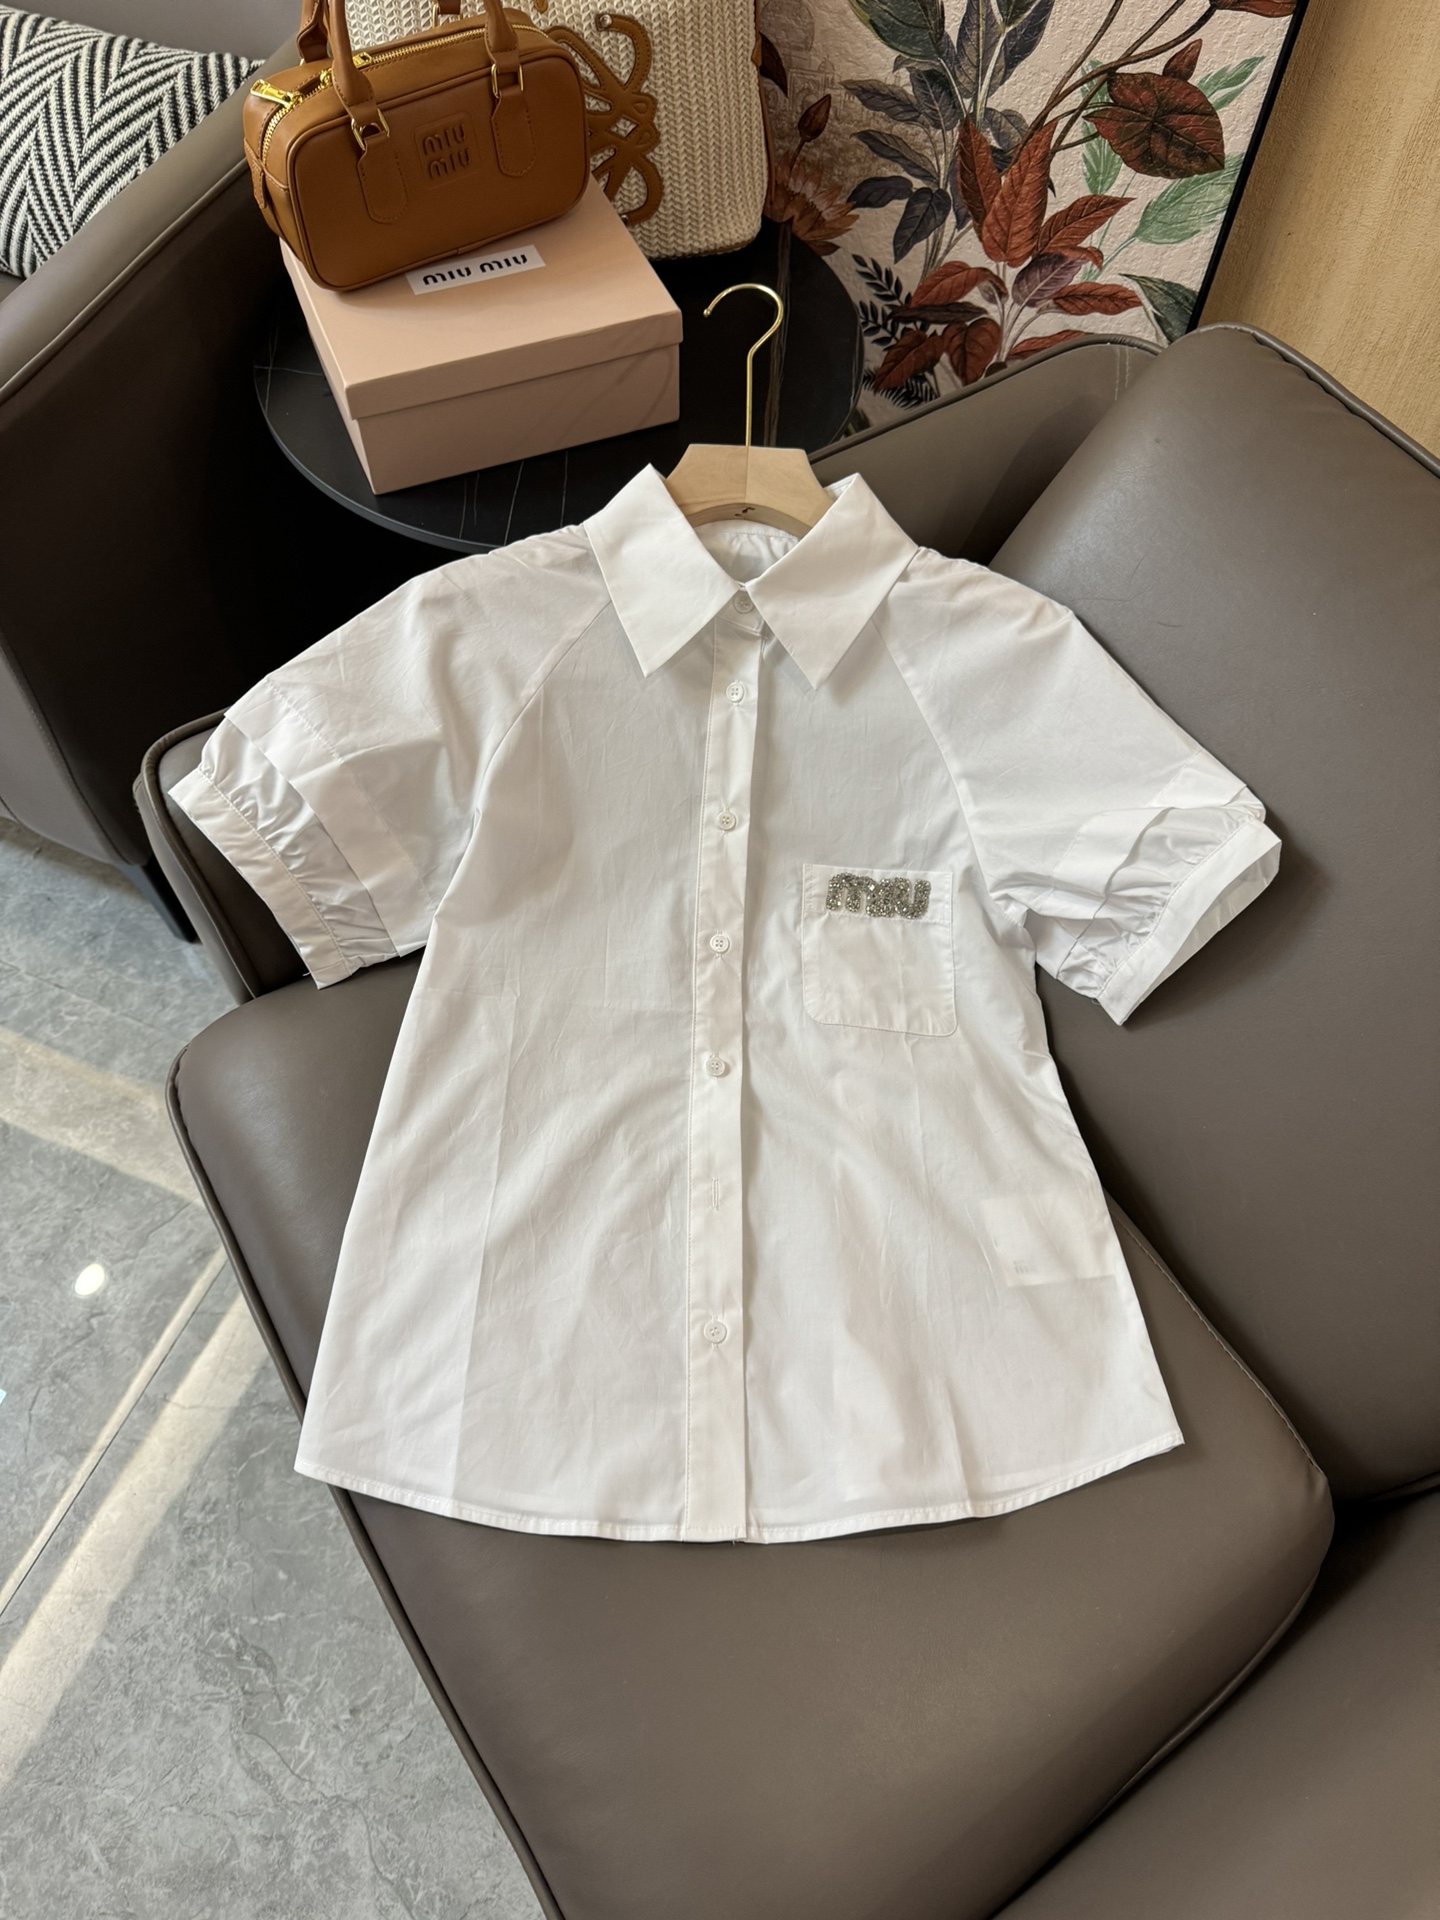 CS041#新款衬衫⚠️Pzydlb????\nmiu 家字母钉钻 短袖衬衫 白色 SML